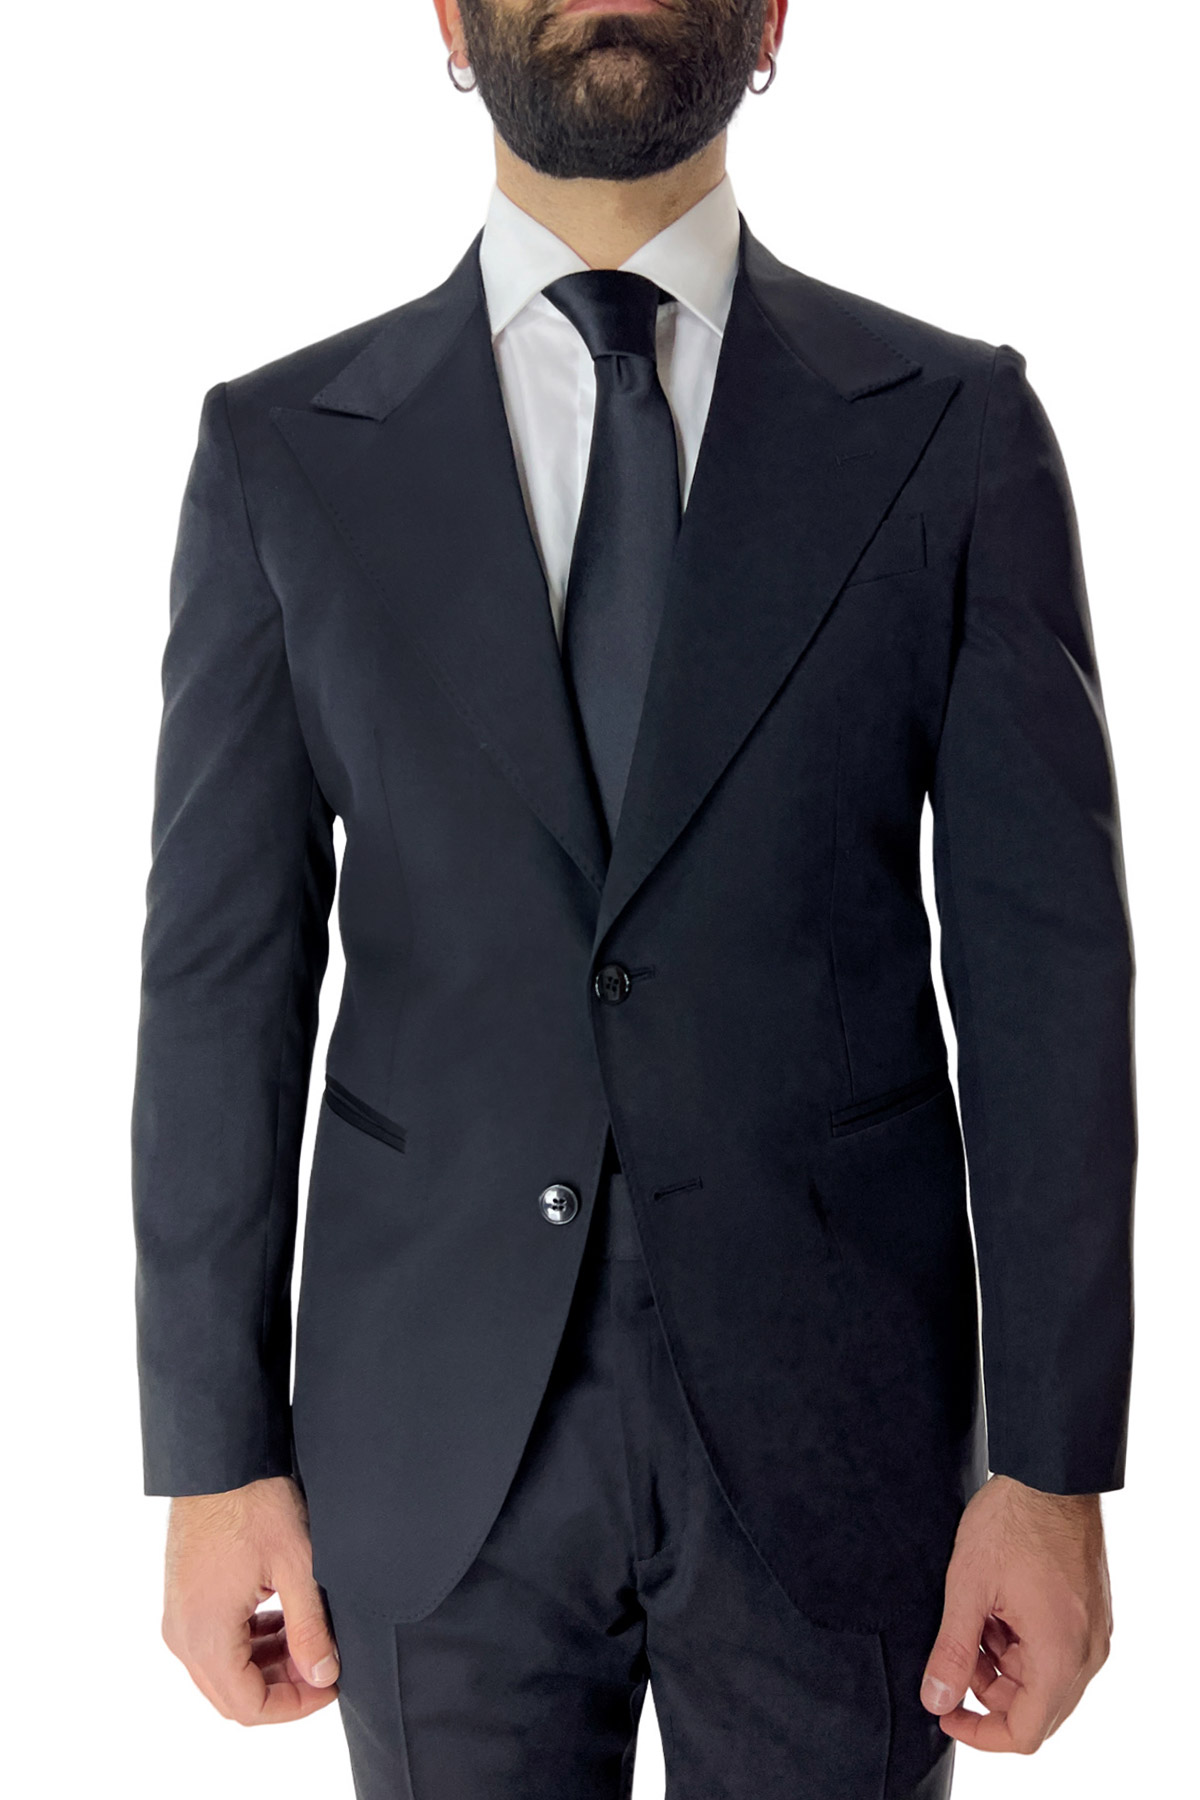 Abito uomo nero con giacca monopetto e pantalone vita alta doppia pinces fresco lana super 130’s Vitale Barberis Canonico